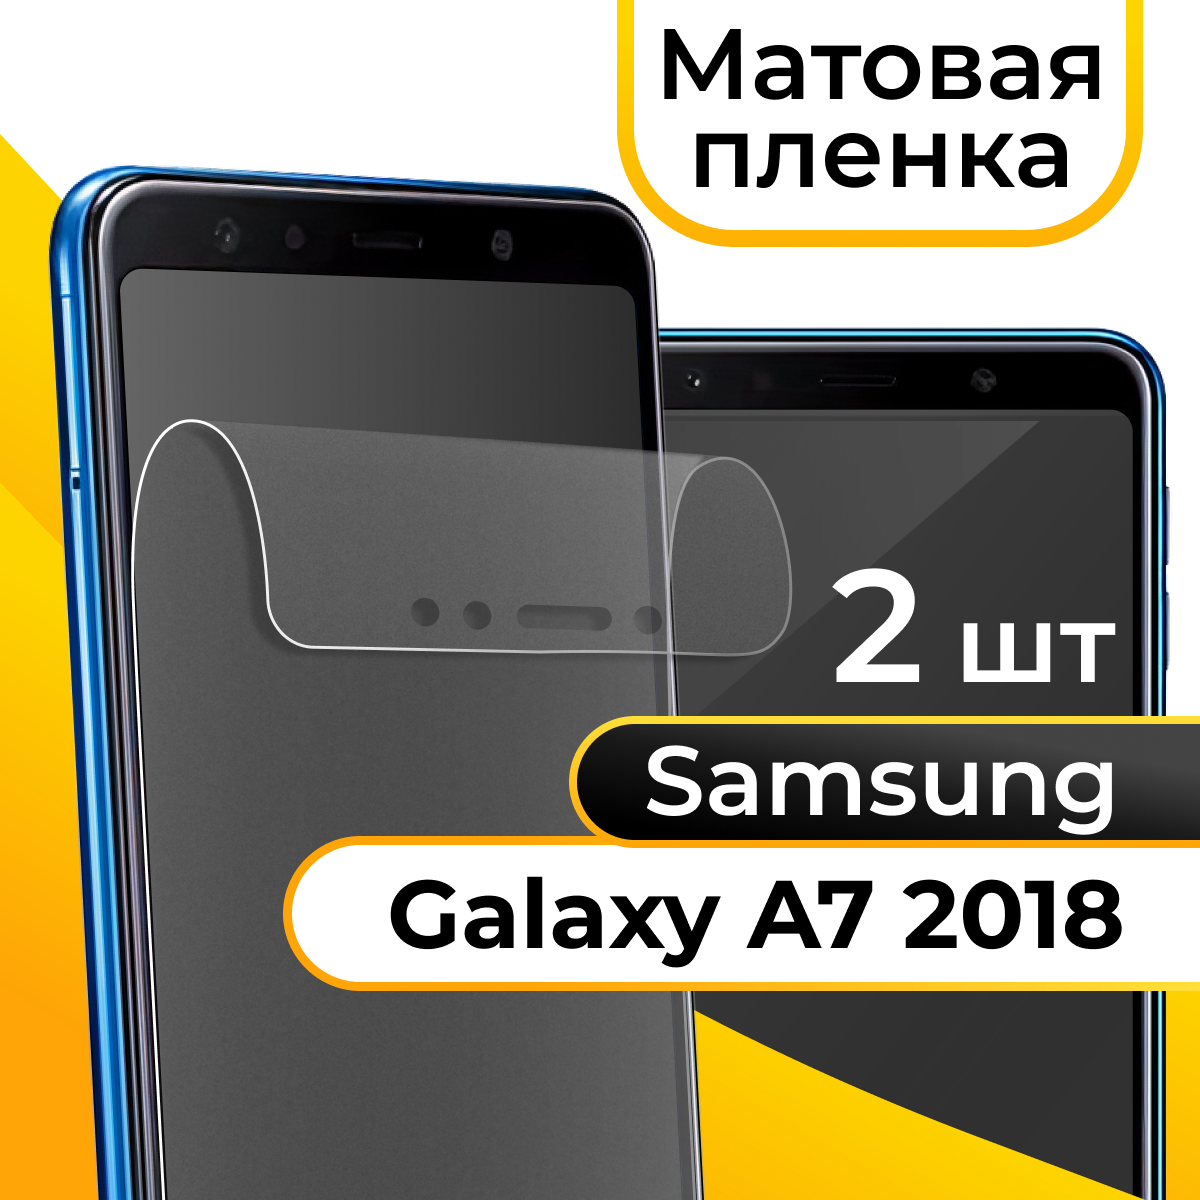 Матовая пленка для смартфона Samsung Galaxy A7 2018 / Защитная противоударная пленка на телефон Самсунг Галакси А7 2018 / Гидрогелевая пленка